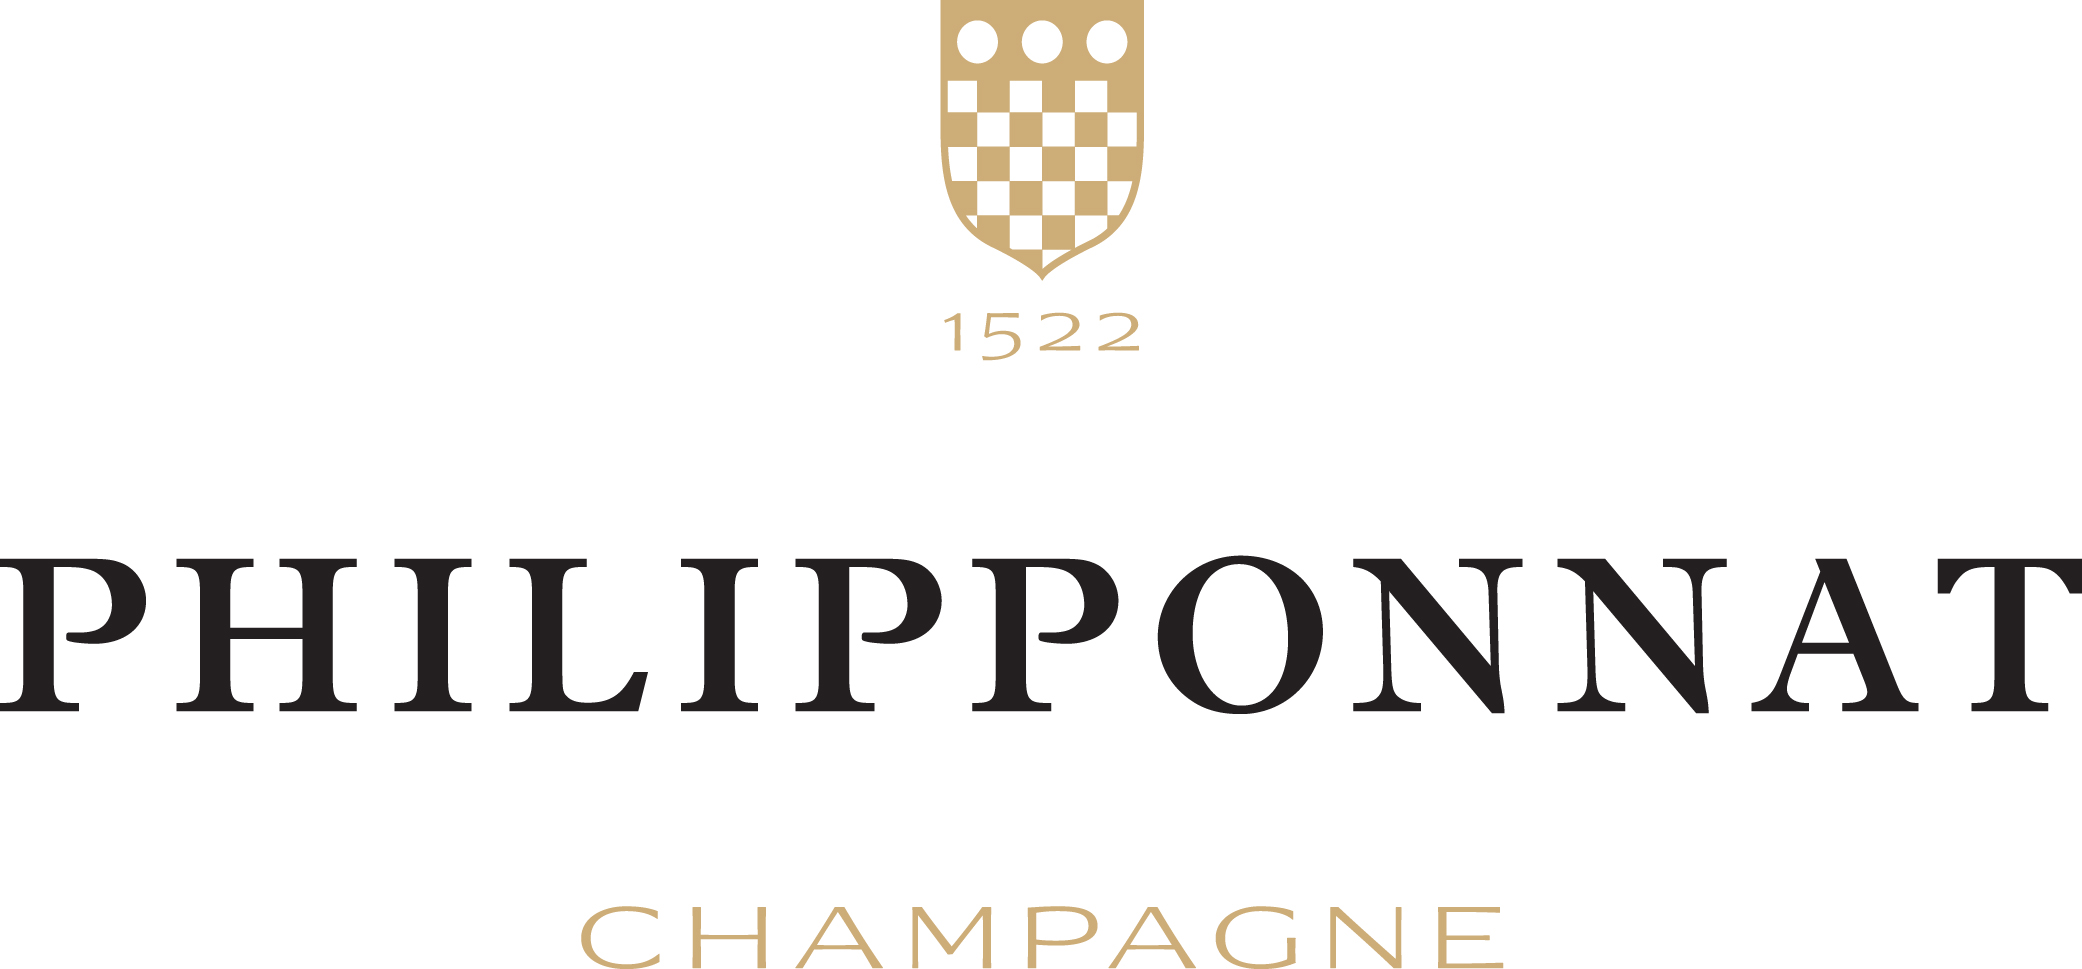 菲丽宝娜香槟Champagne Philipponnat